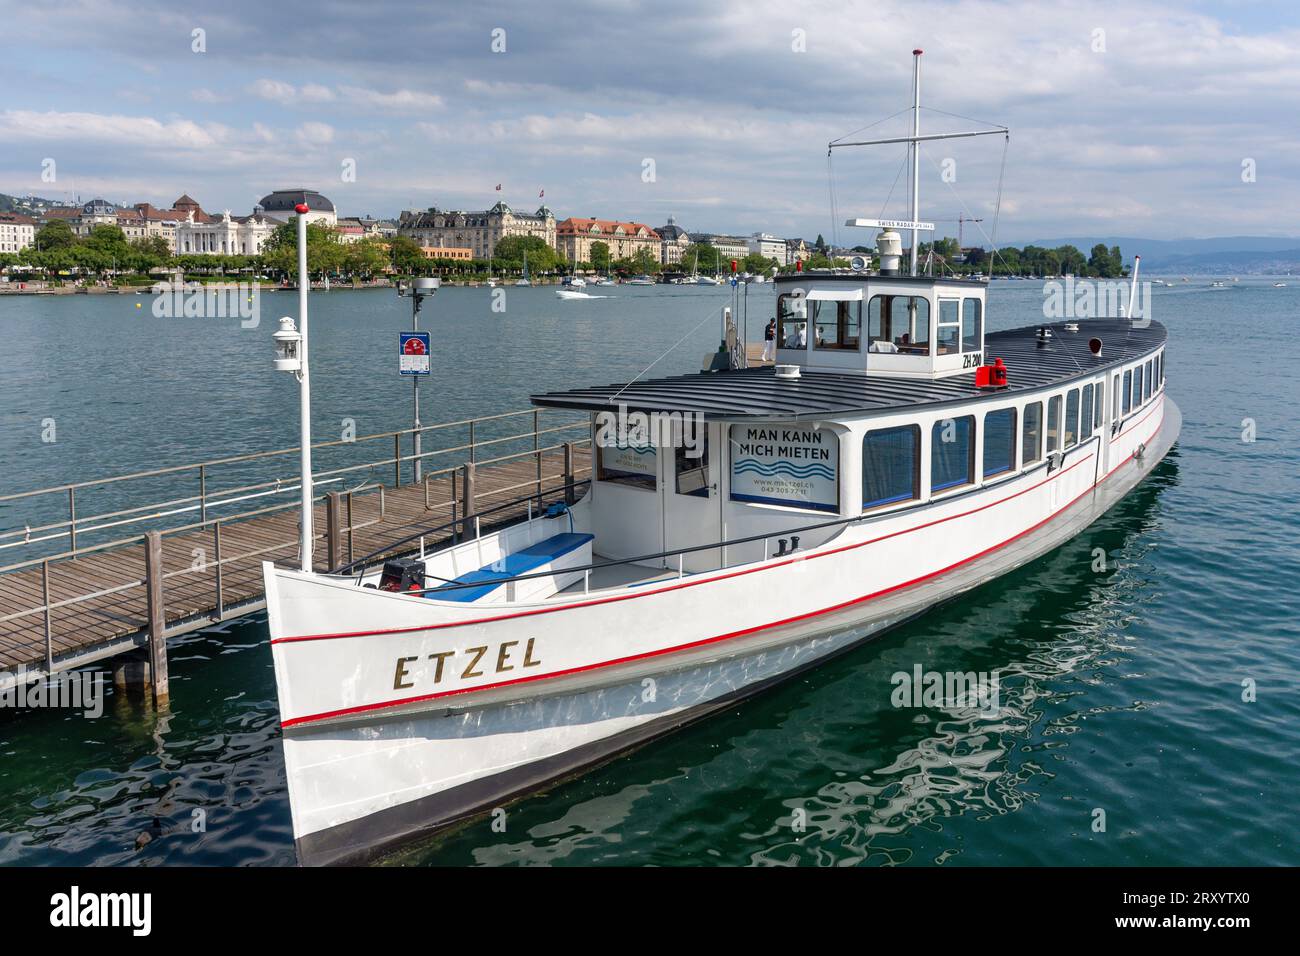 Navire de croisière M S Etzel amarré sur le lac Zürich (Zurichsee), Zürich Bürkliplatz (See), ville de Zürich, Zürich, Suisse Banque D'Images